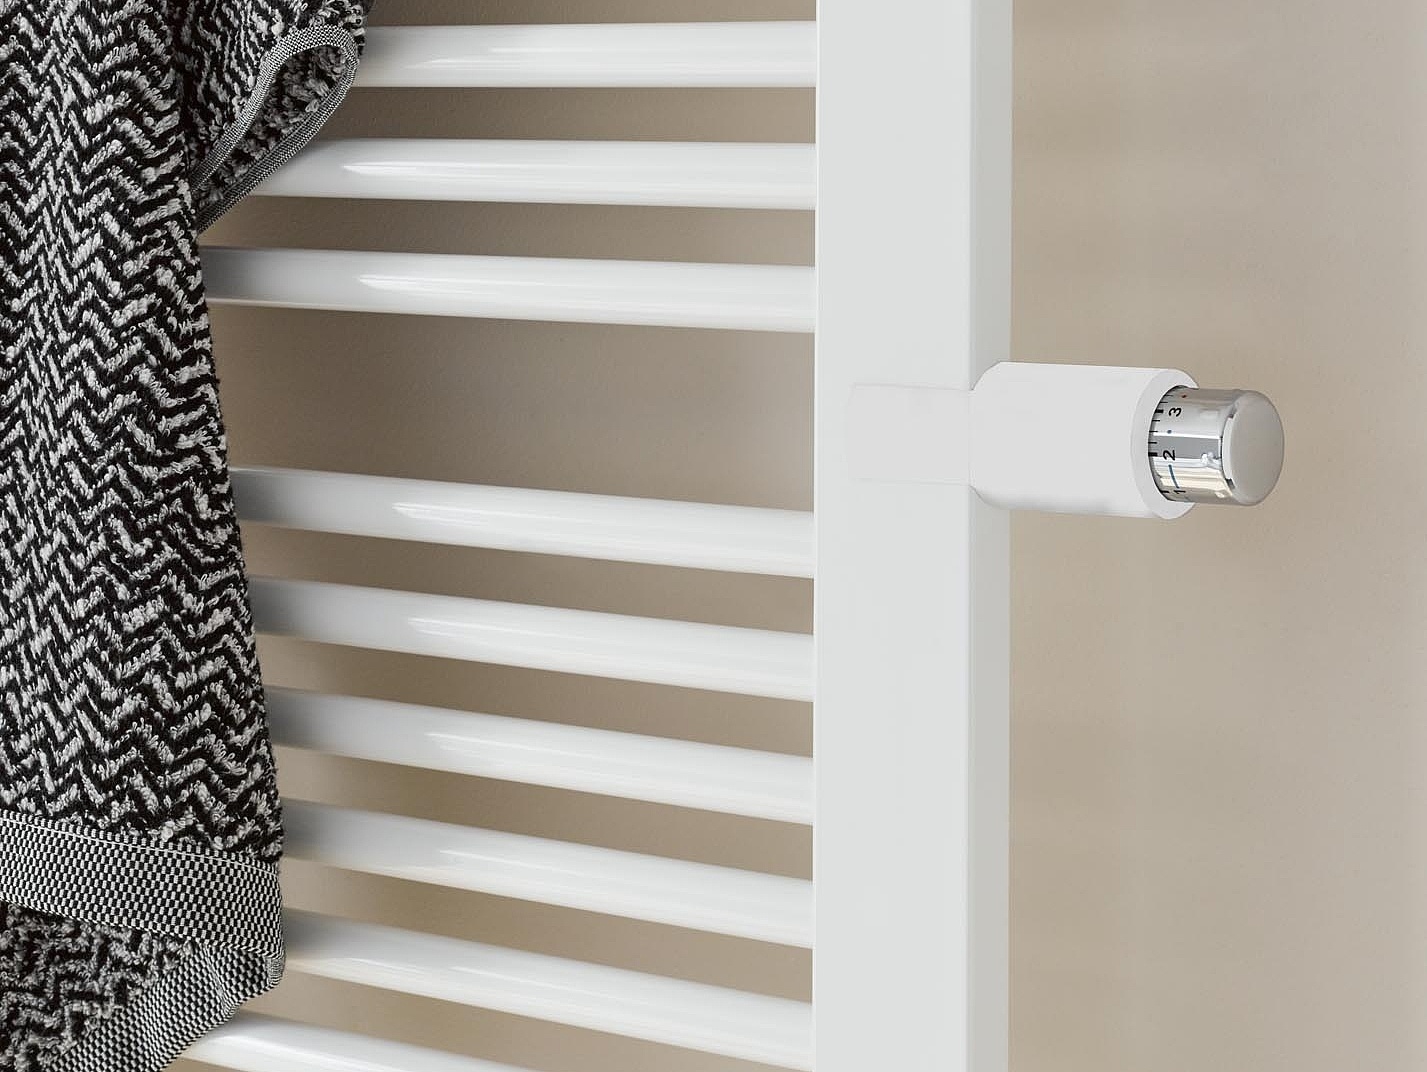 Perfekcyjnie zintegrowana głowica termostatyczna w grzejnikach dekoracyjnych i łazienkowych Kermi Credo plus jest umieszczona na wygodnej dla użytkownika wysokości.